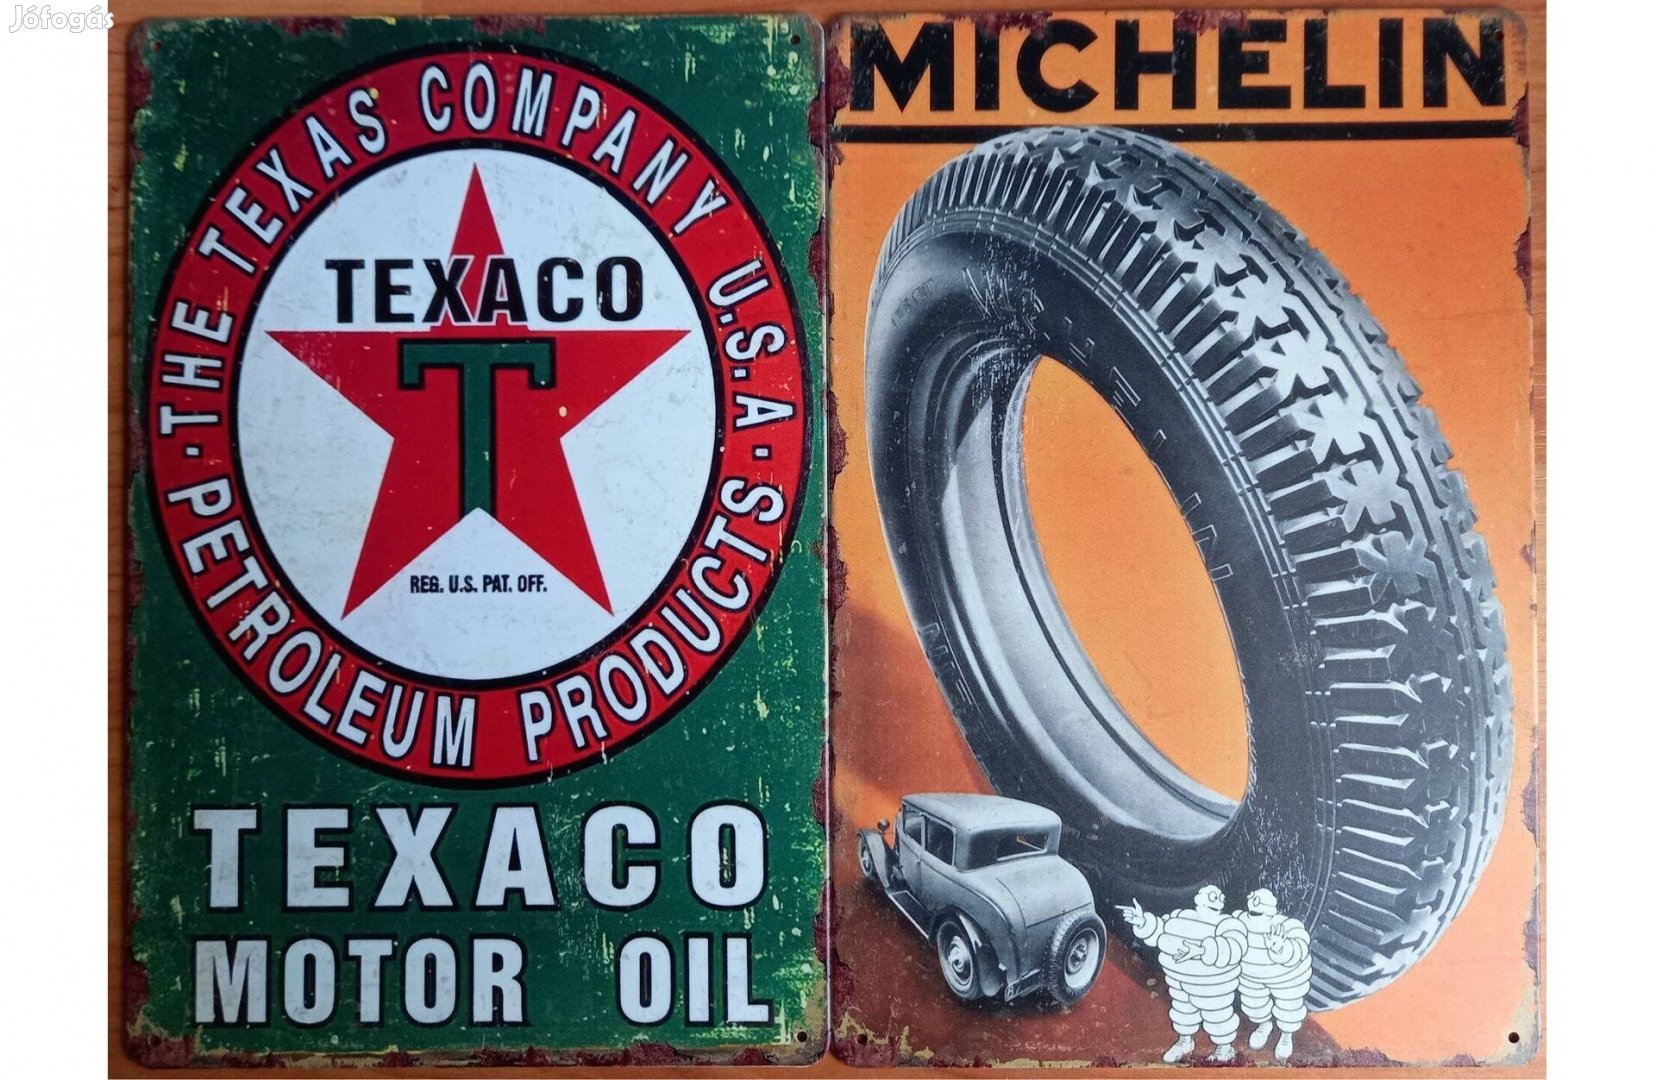 Dekorációs fém tábla (TEXACO Motor OIL - Michelin Gumiabroncs)